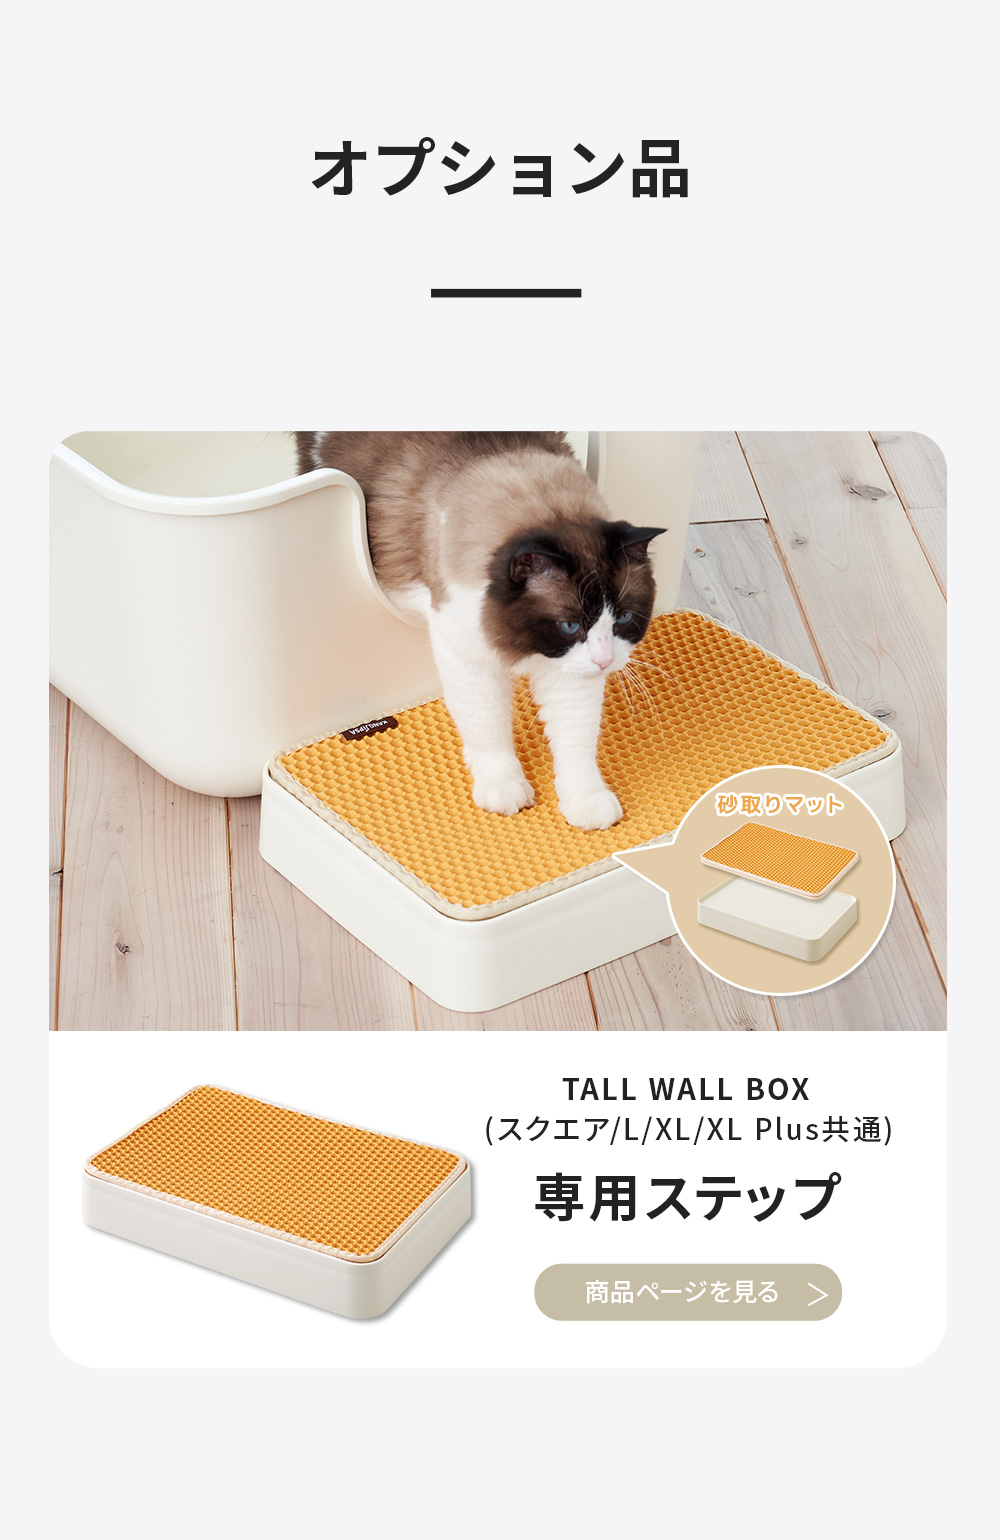 OFT) (猫砂4袋プレゼント中) [大型 猫トイレ TALL WALL BOX - L(本体 